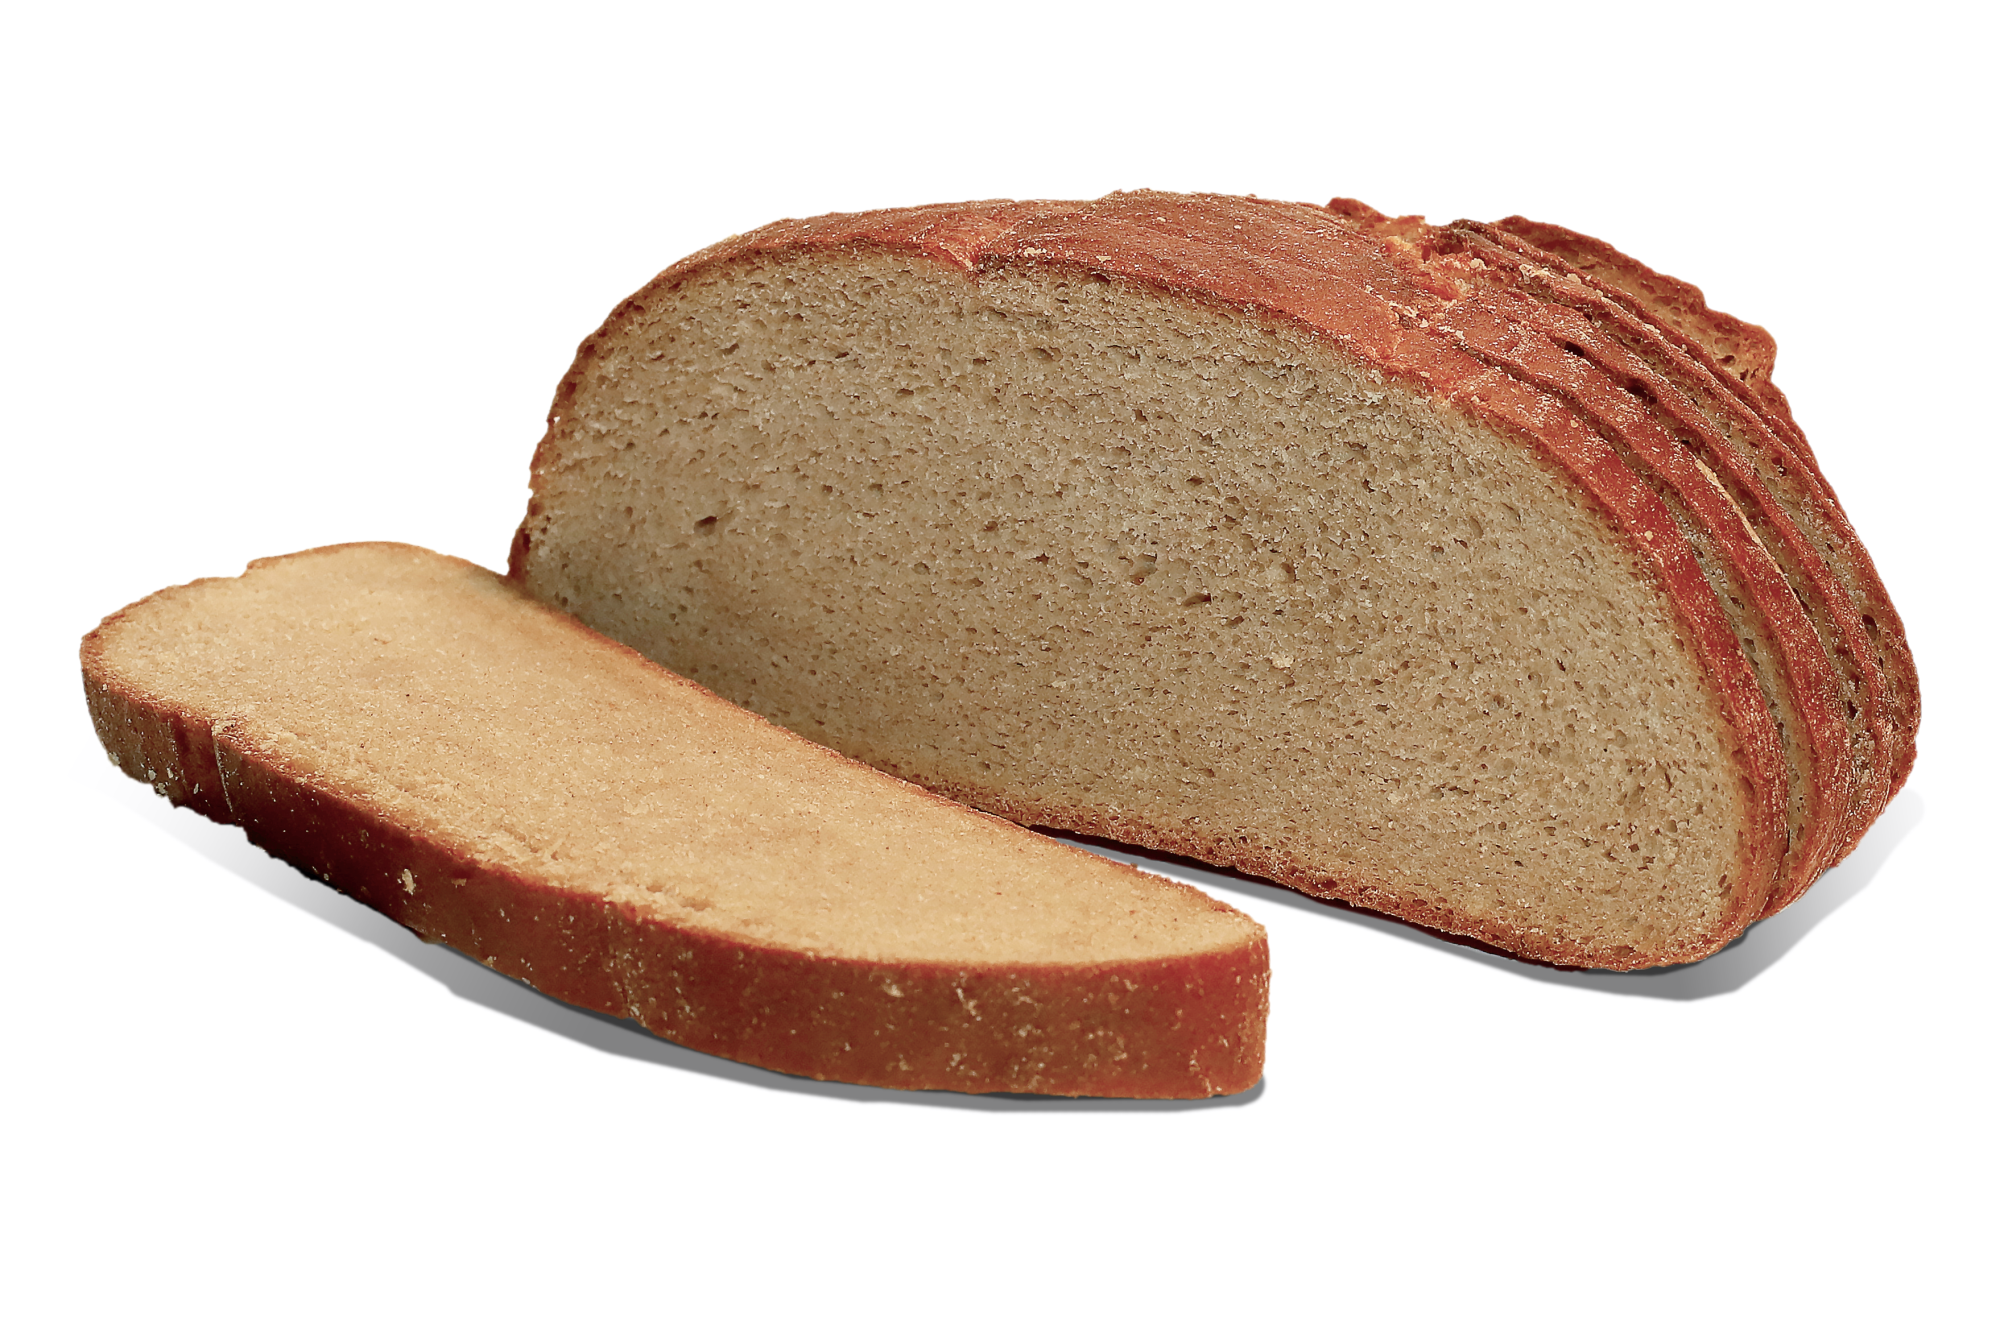 Подовый хлеб это какой. Хлеб Чусовской подовый. Хлеб Чусовской смак. Тагилхлеб Чусовской подовый. Хлеб ржано-пшеничный подовый.